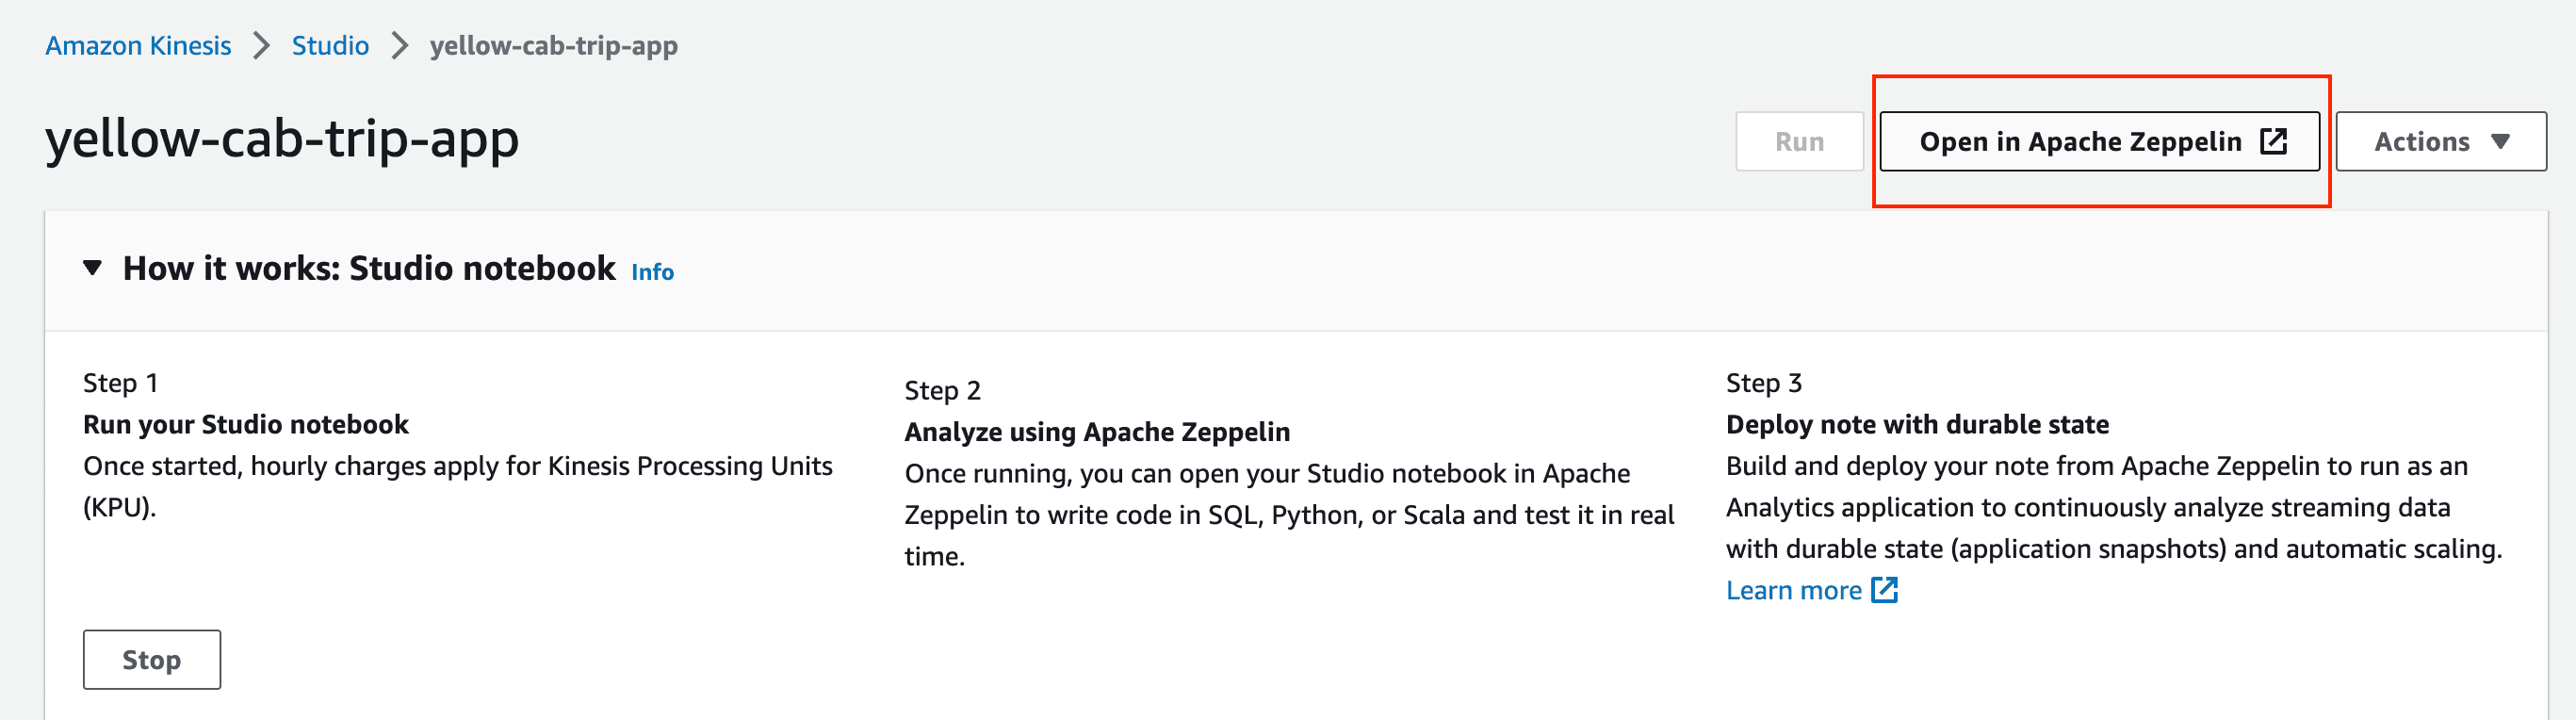 Open in Apache Zeppelin